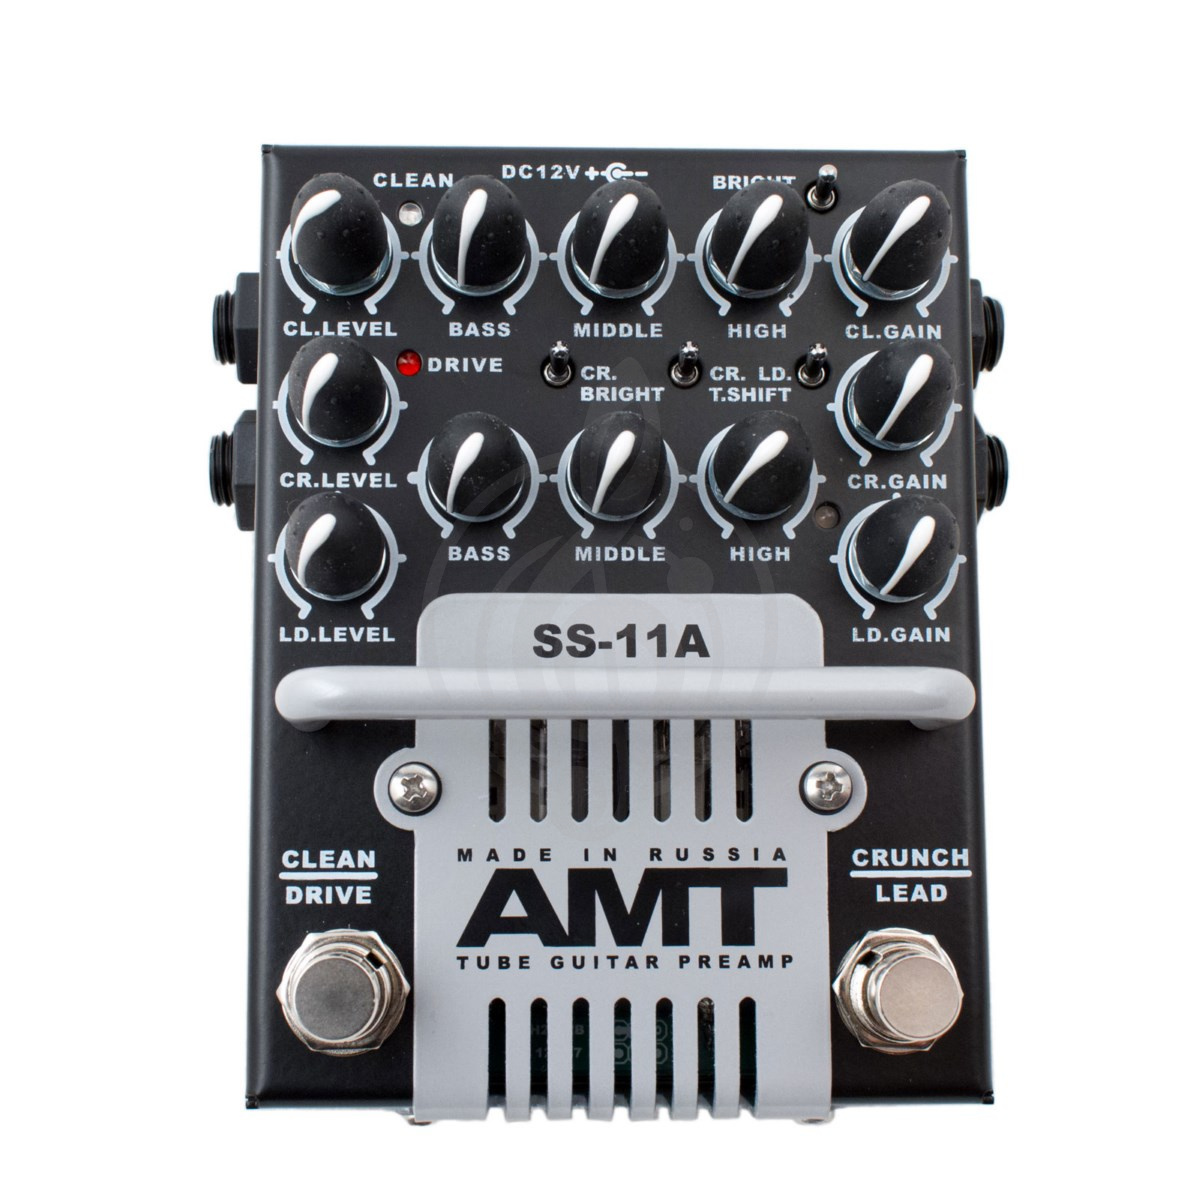 Гитарный предусилитель (преамп) Гитарные предусилители (преампы) AMT electronics AMT Electronics SS-11A (Classic) - ламповый гитарный предусилитель SS-11A - фото 1